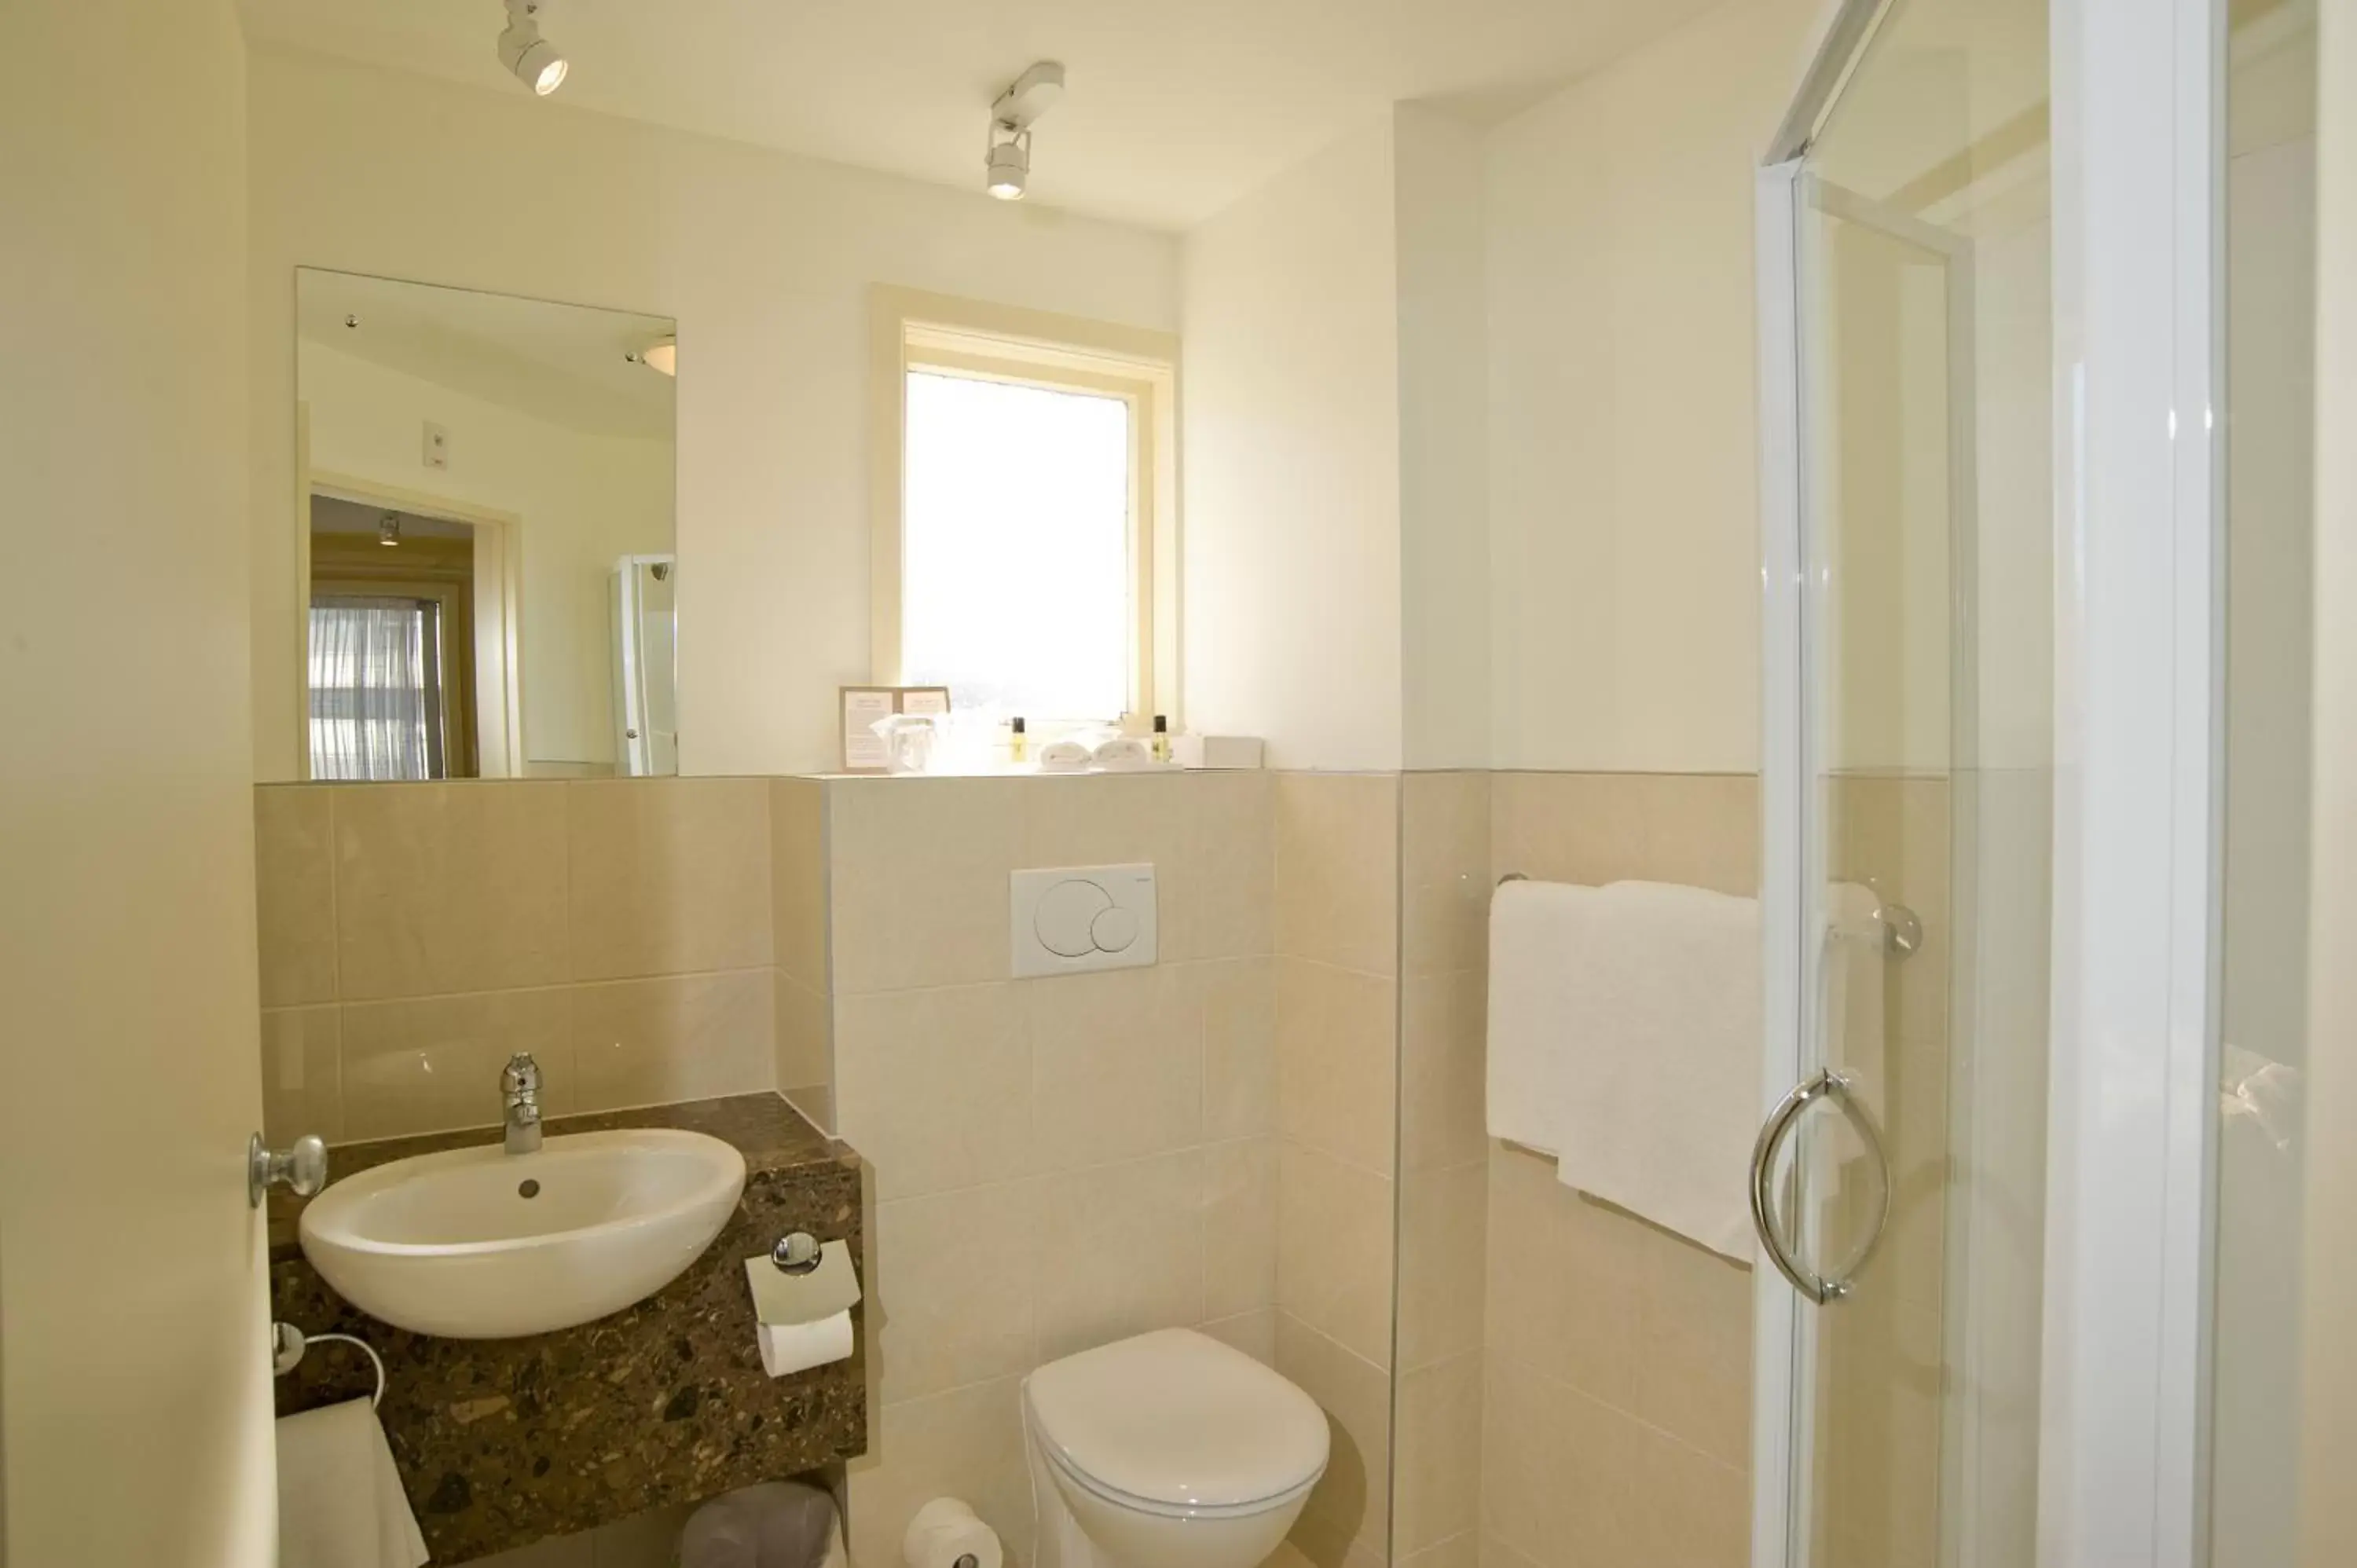 Toilet, Bathroom in Kingsgate Hotel Te Anau